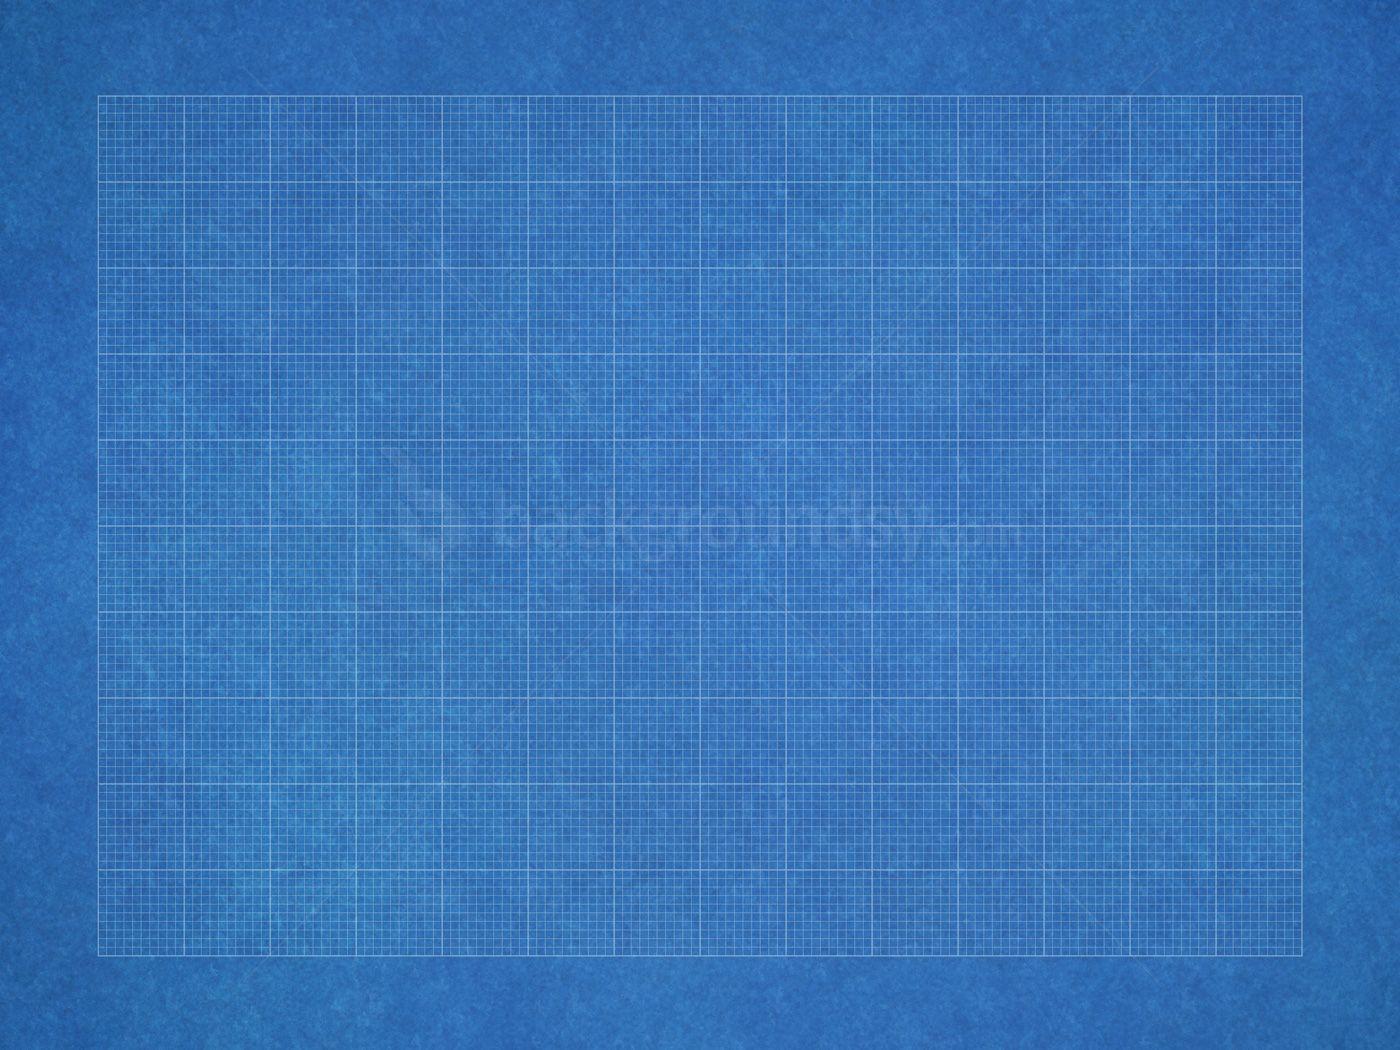 Blueprint grid paper